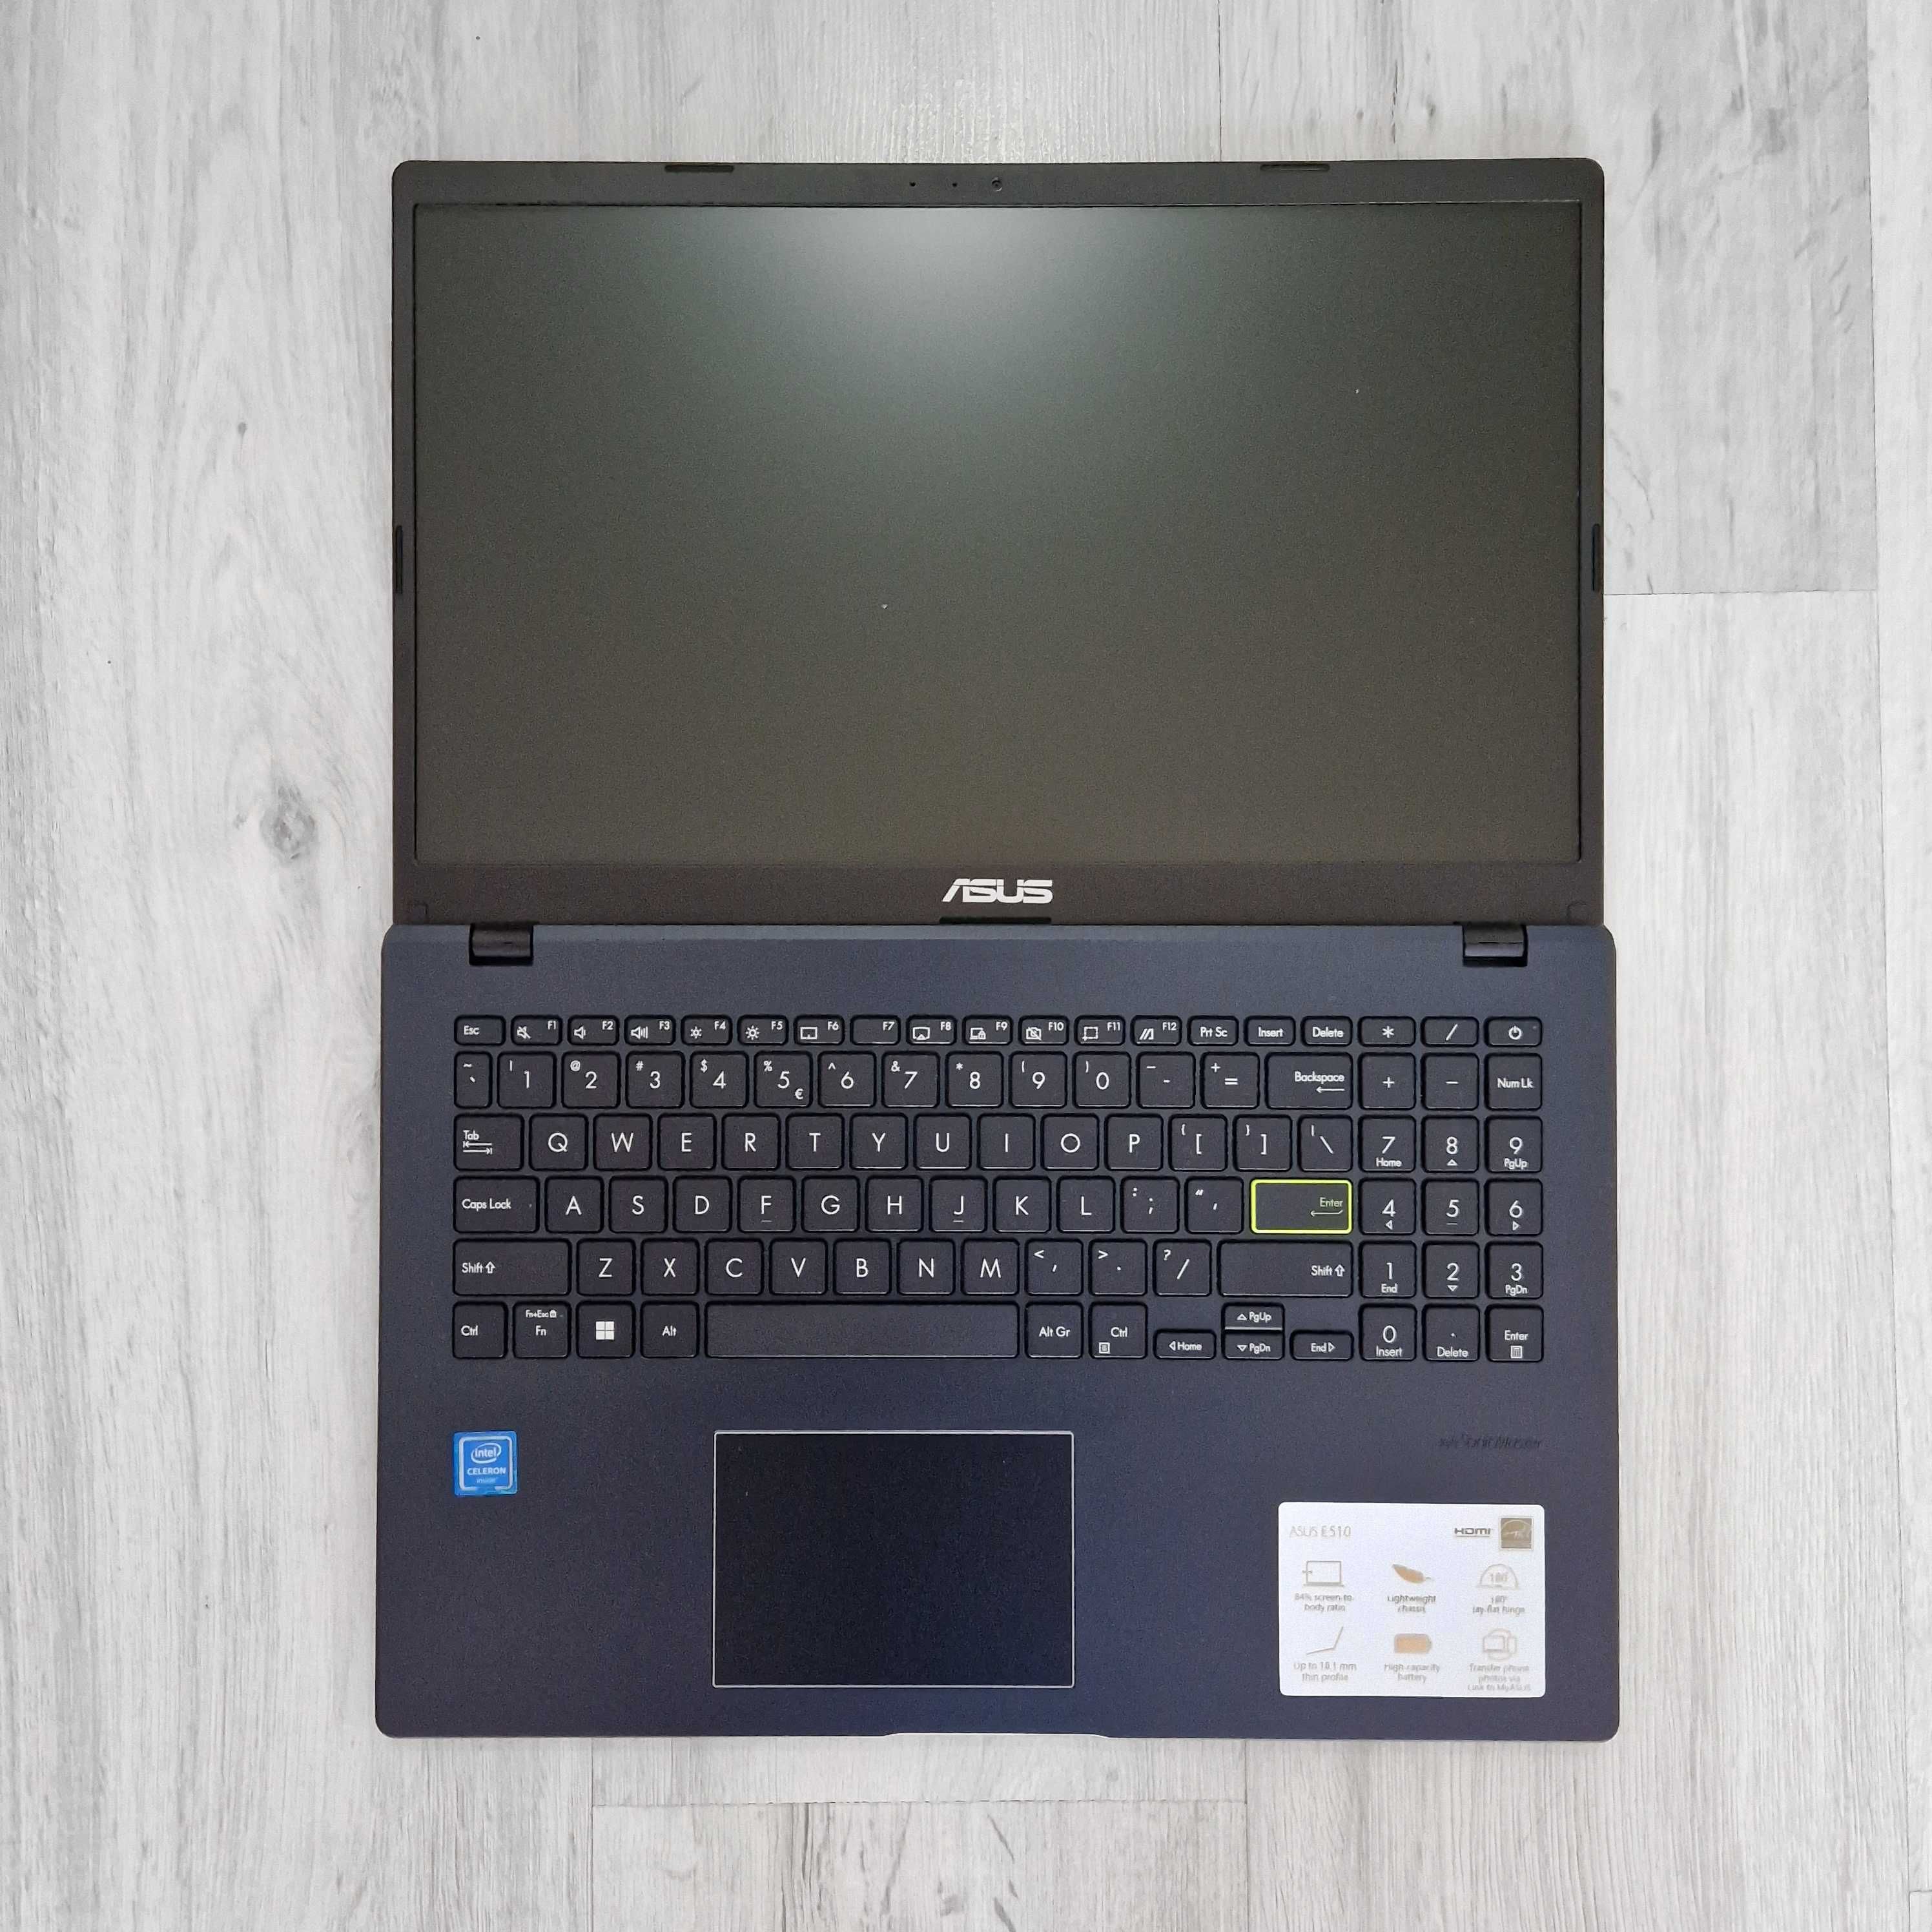 Asus VivoBook, 8Gb Ram, 256Gb SSD, Intel N4020, ca nou, Garantie